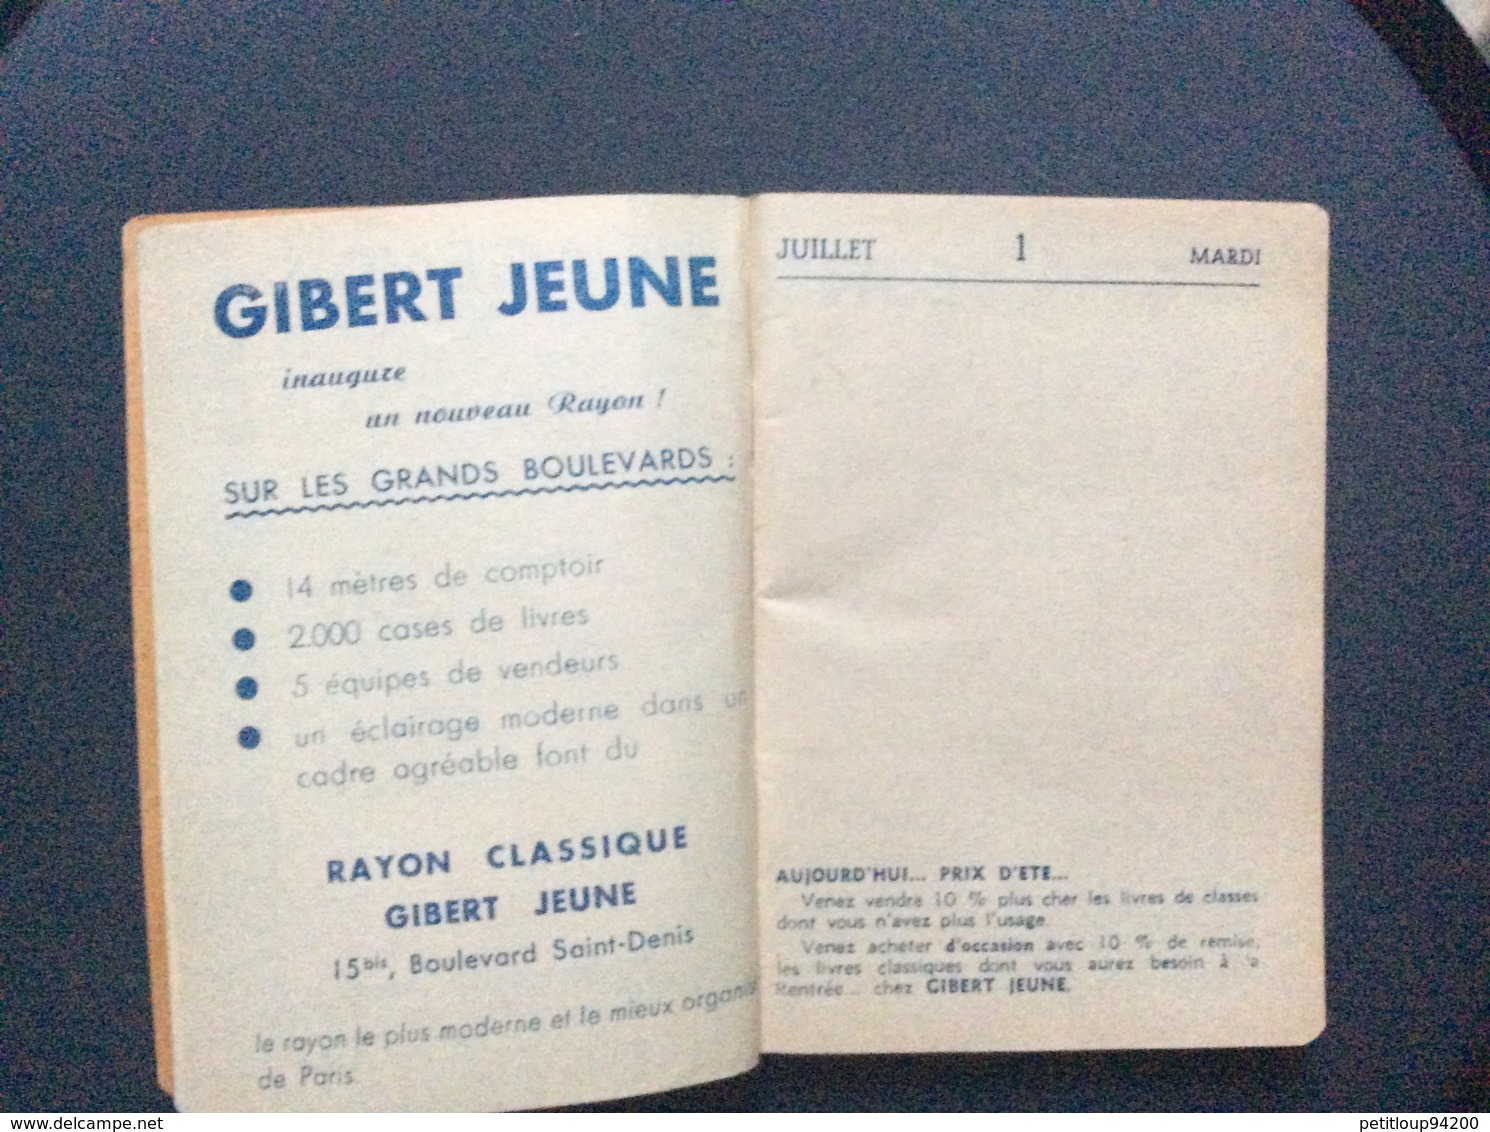 GIBERT JEUNE  Agenda Photo-Guide  ANNÉE 1952  Agenda Vierge - Agenda Vírgenes